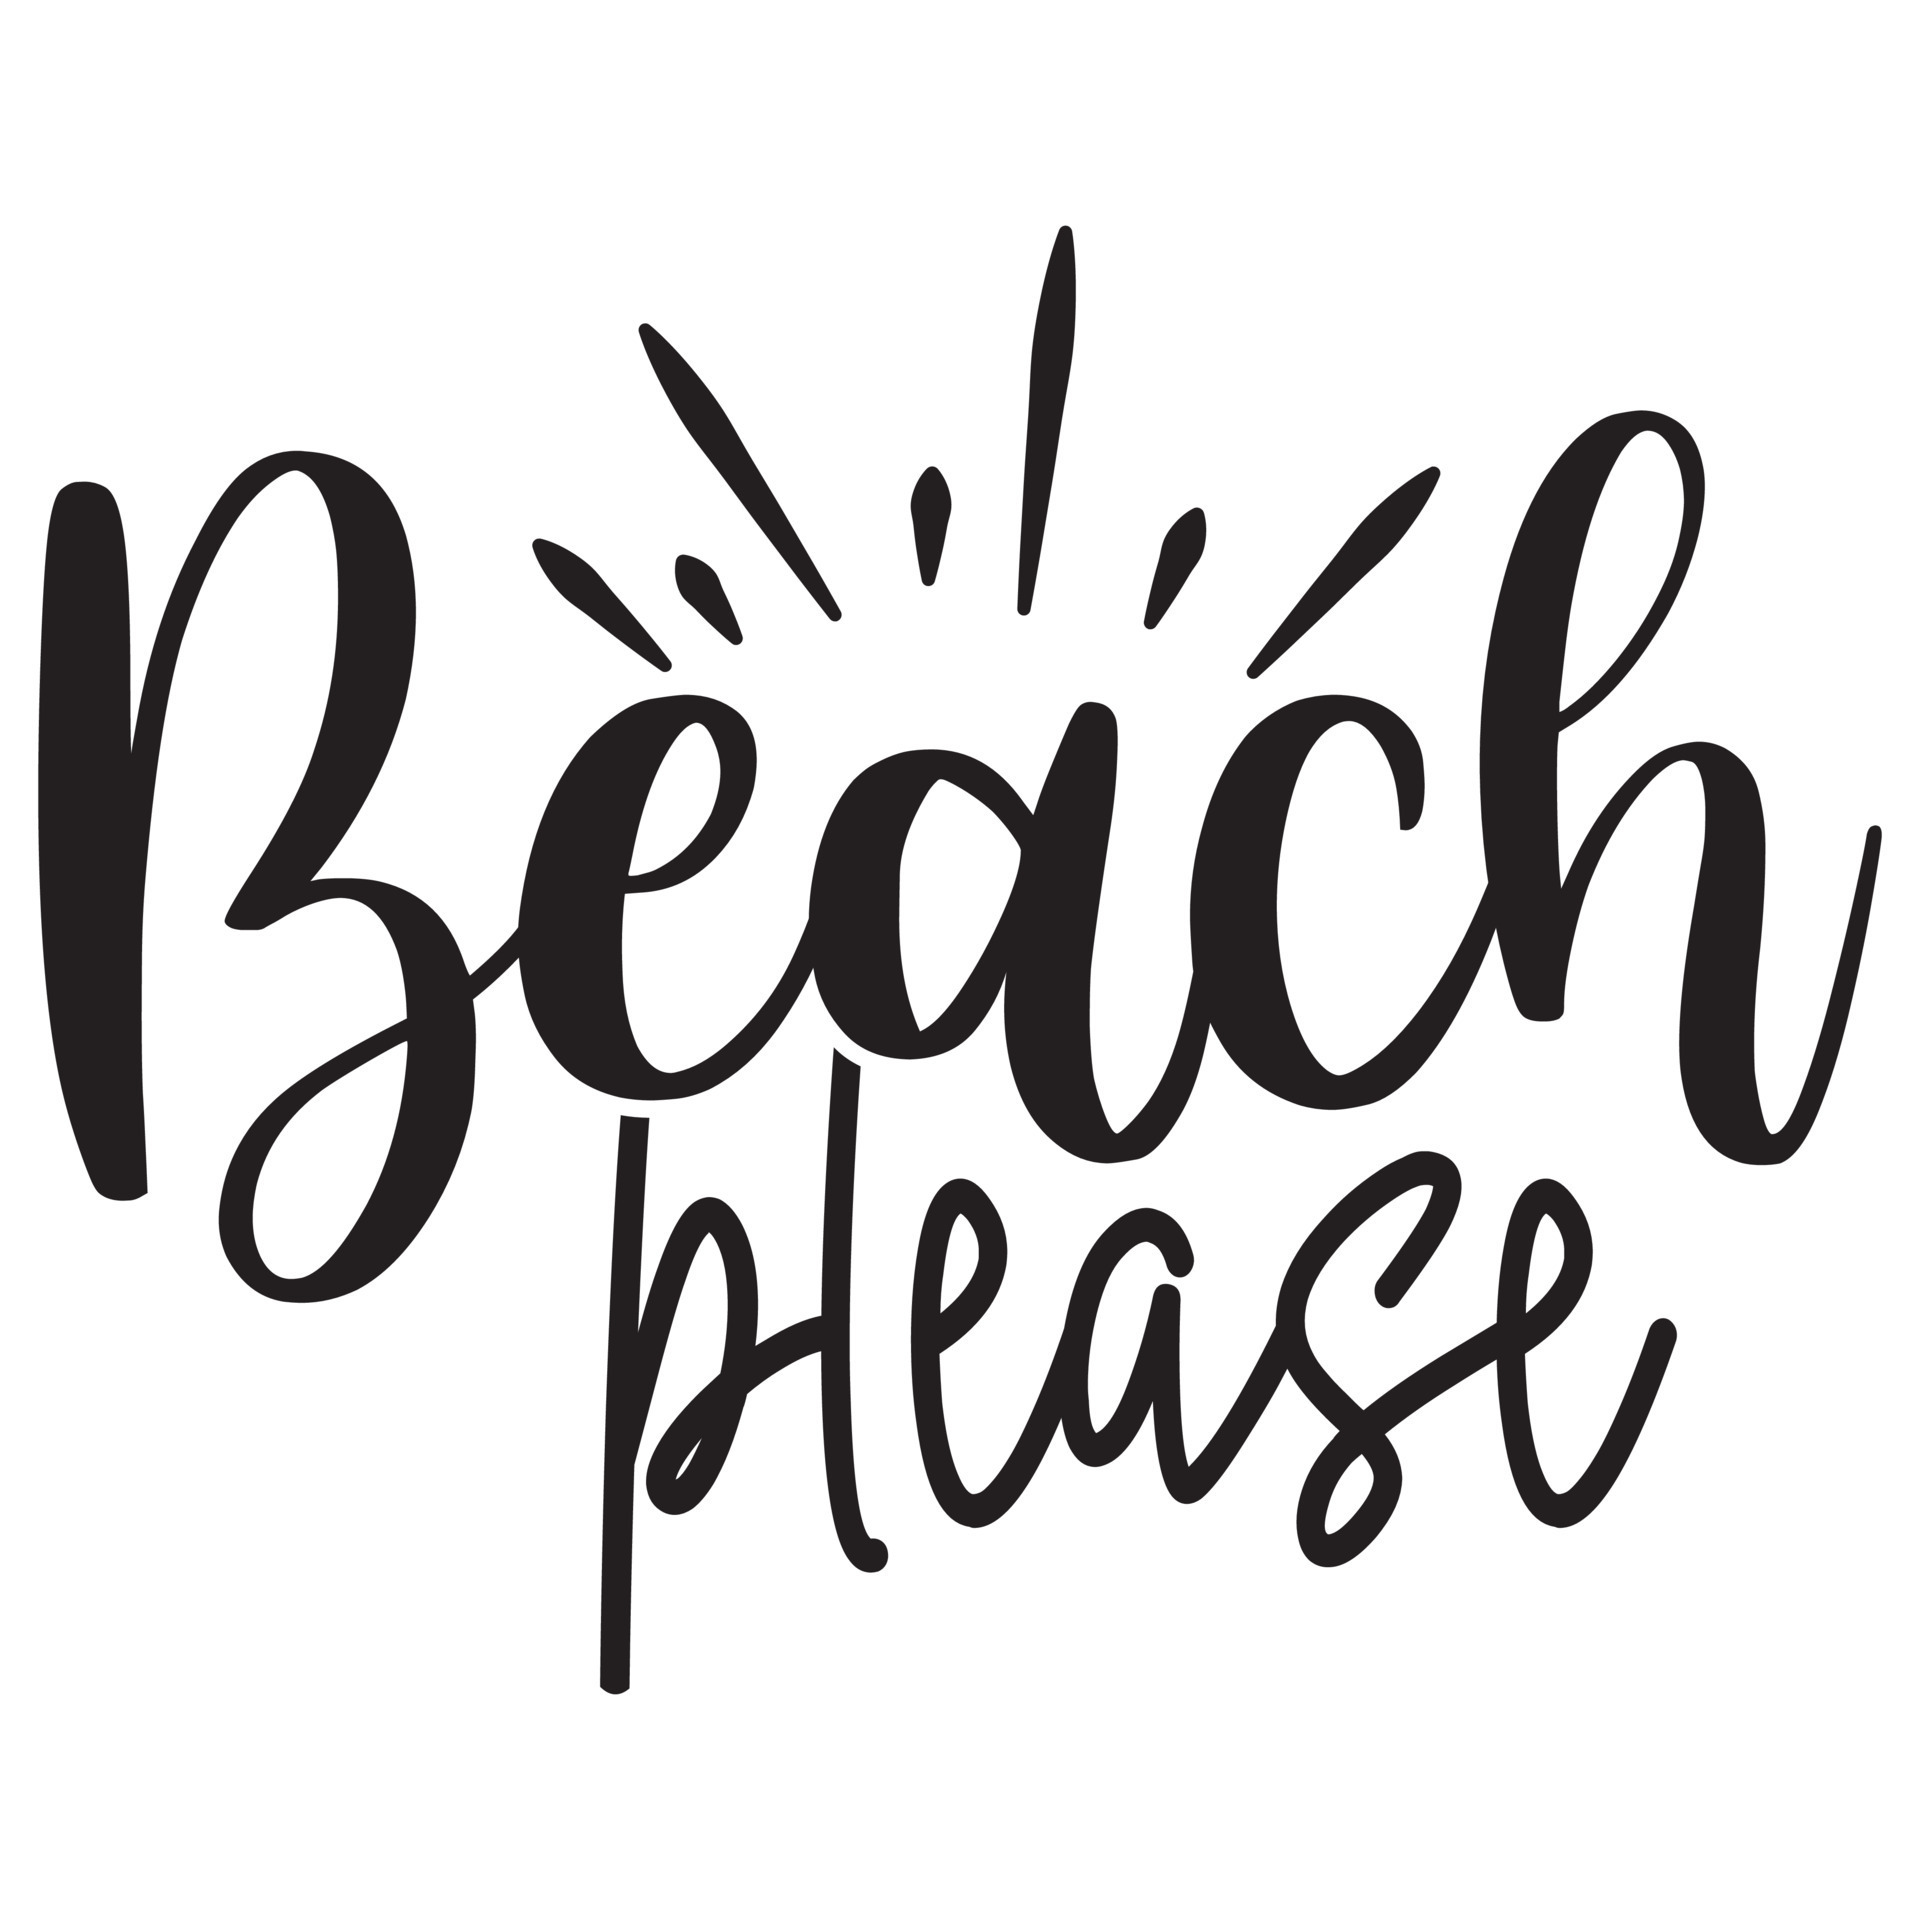 beach please t shirt design 22300386 Vector Art at Vecteezy